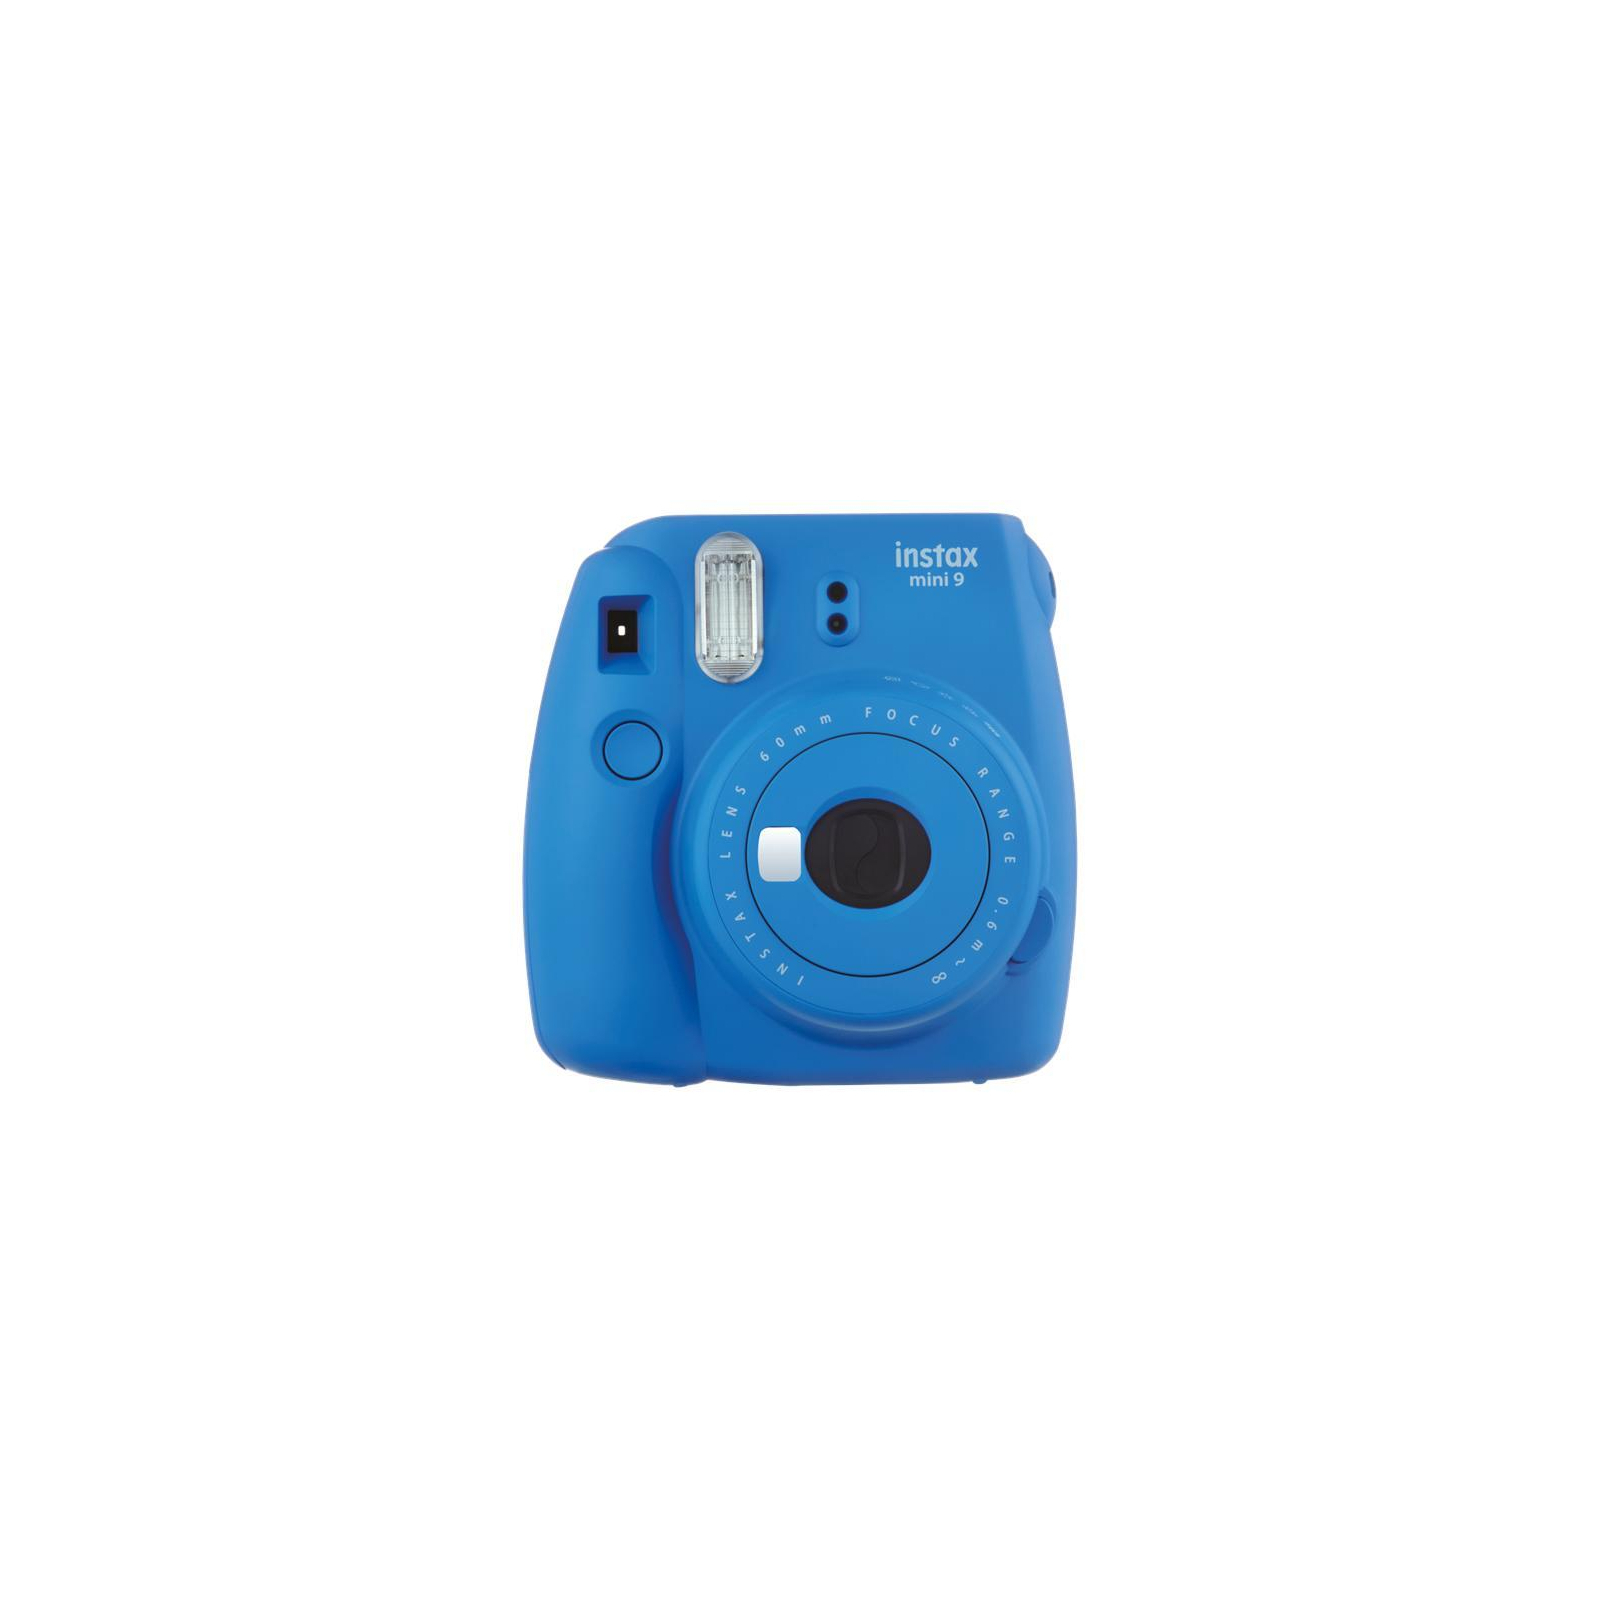 Камера моментальной печати Fujifilm Instax Mini 9 CAMERA COB BLUE EX D N Синий Кобальт (16550564) изображение 2